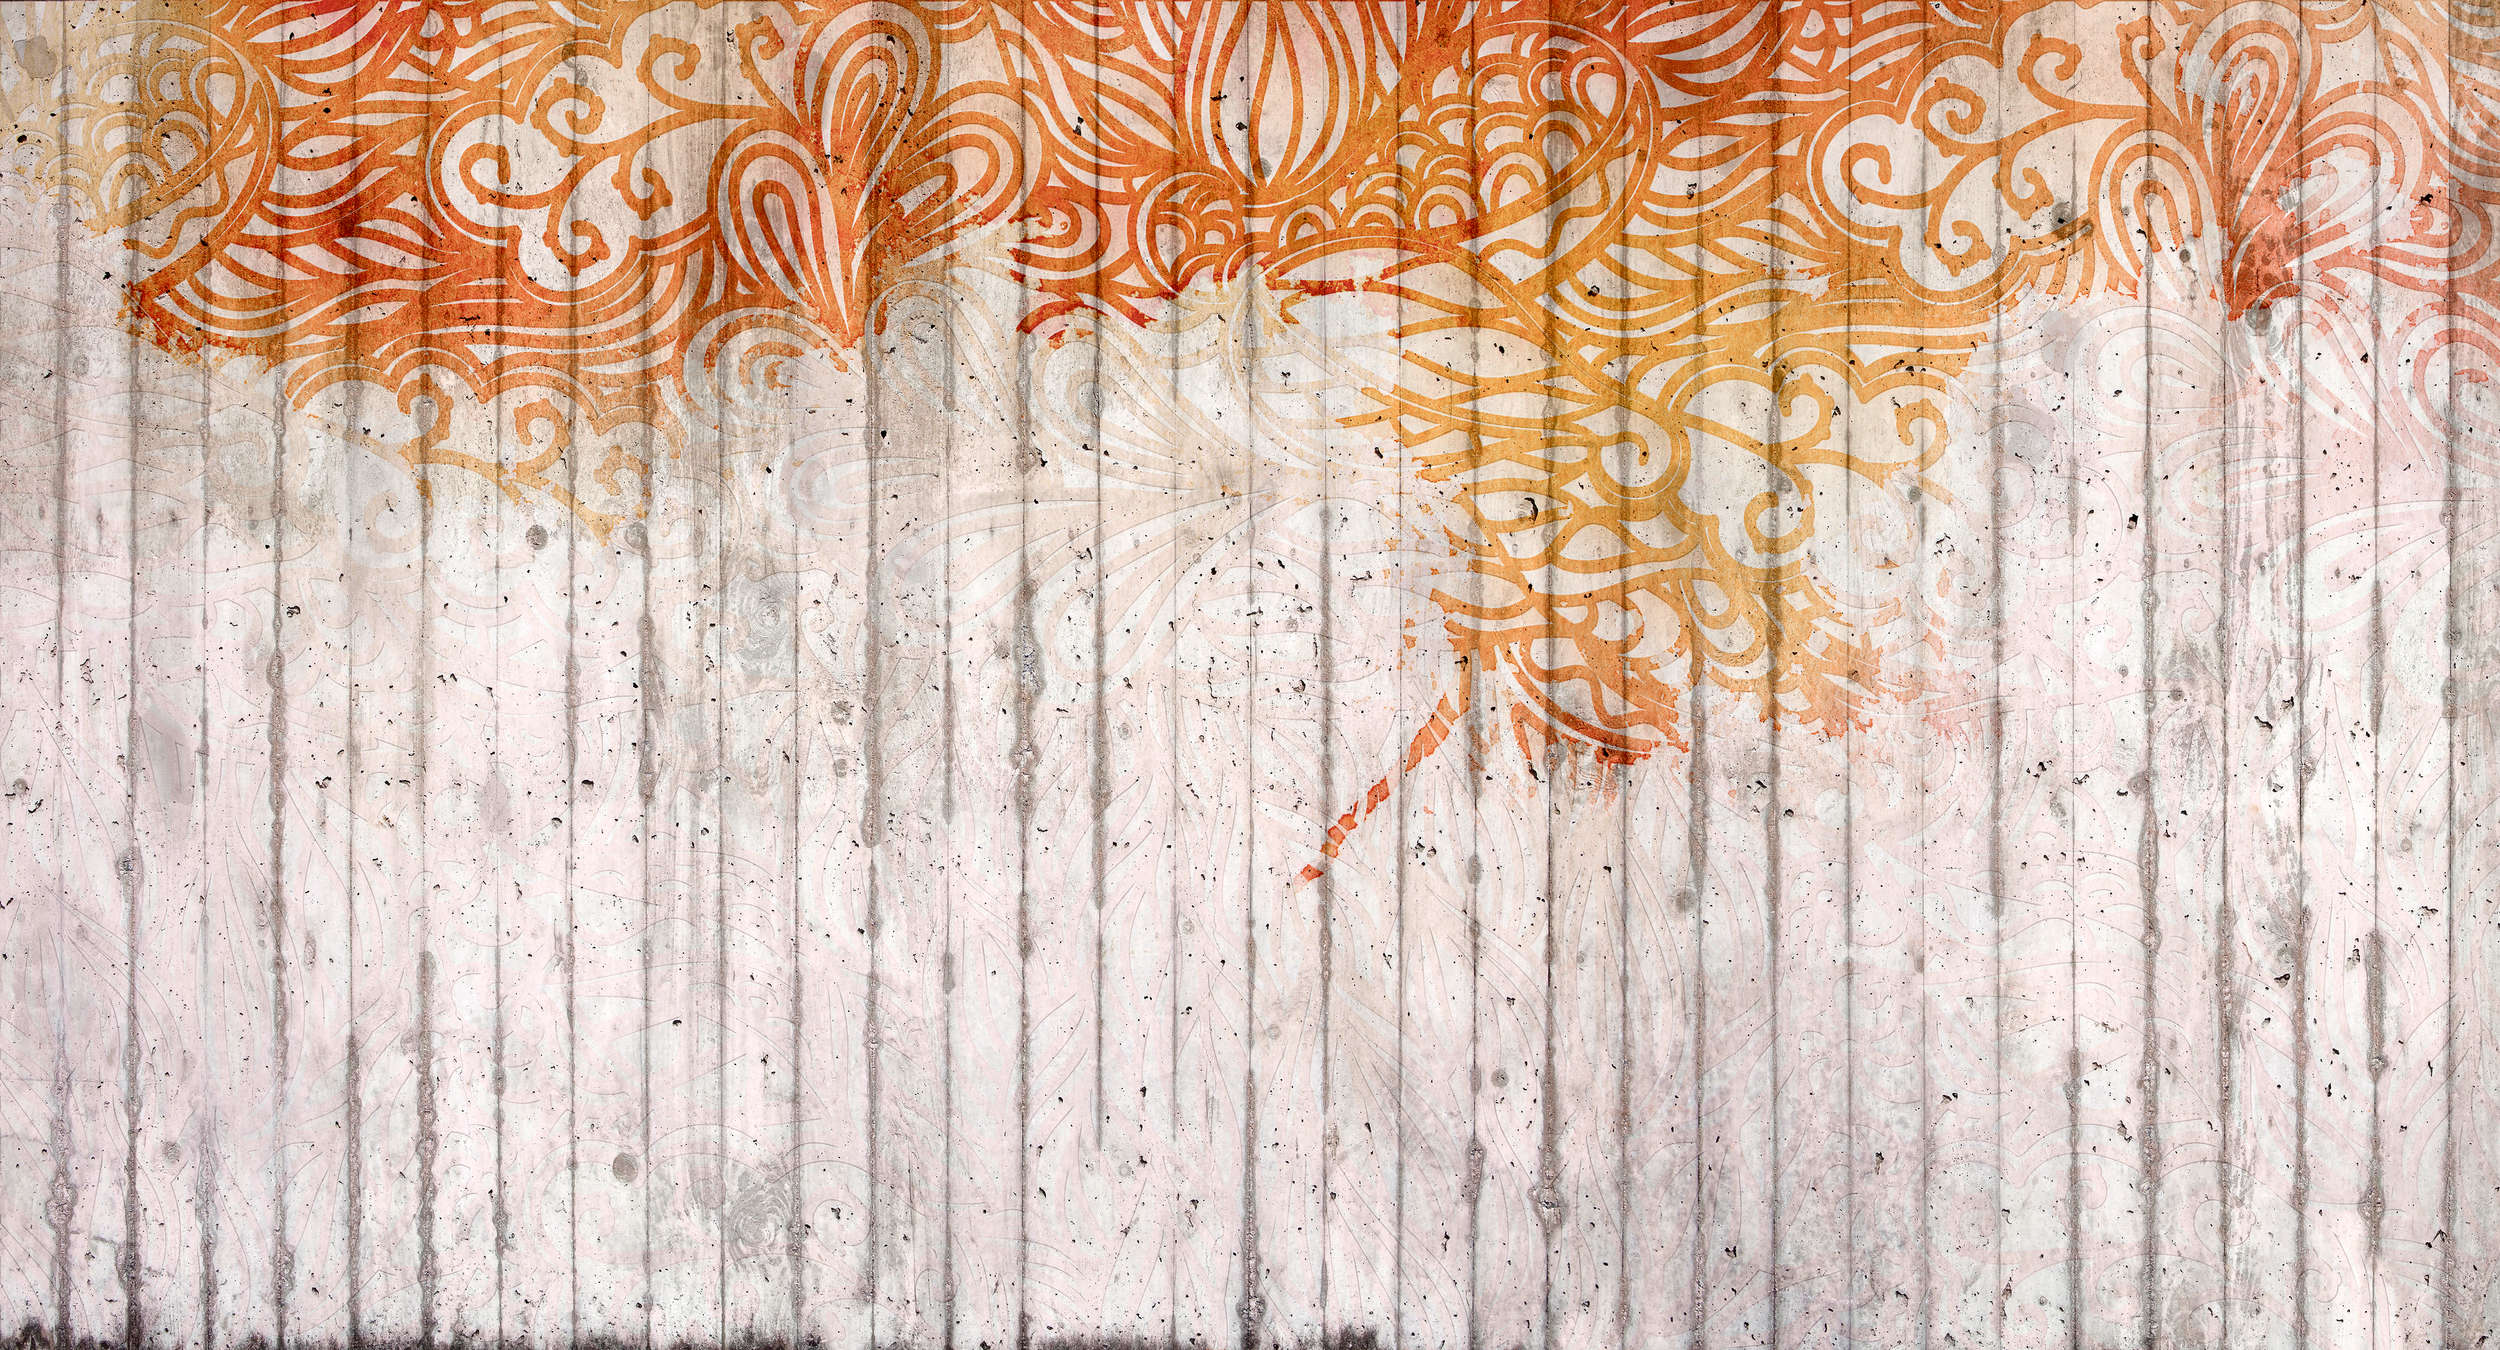             Doodle stijl betonnen ornament muurschildering - Oranje, Grijs, Rood
        